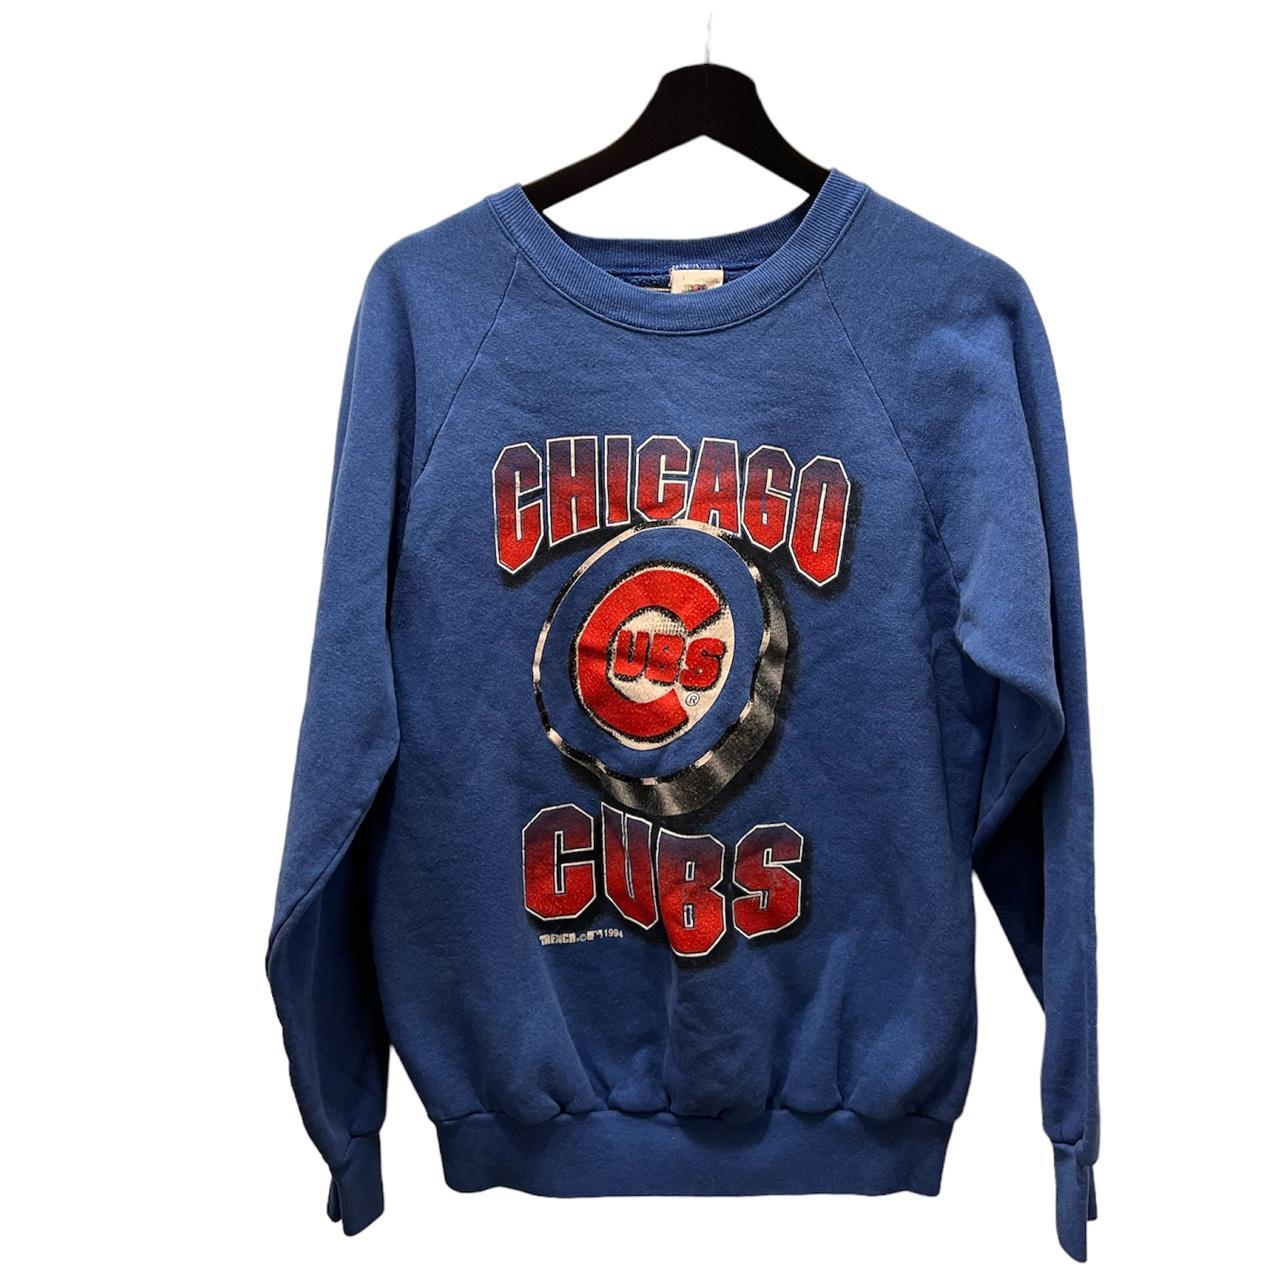 Retro Chicago Cubs crewneck sweatshirt